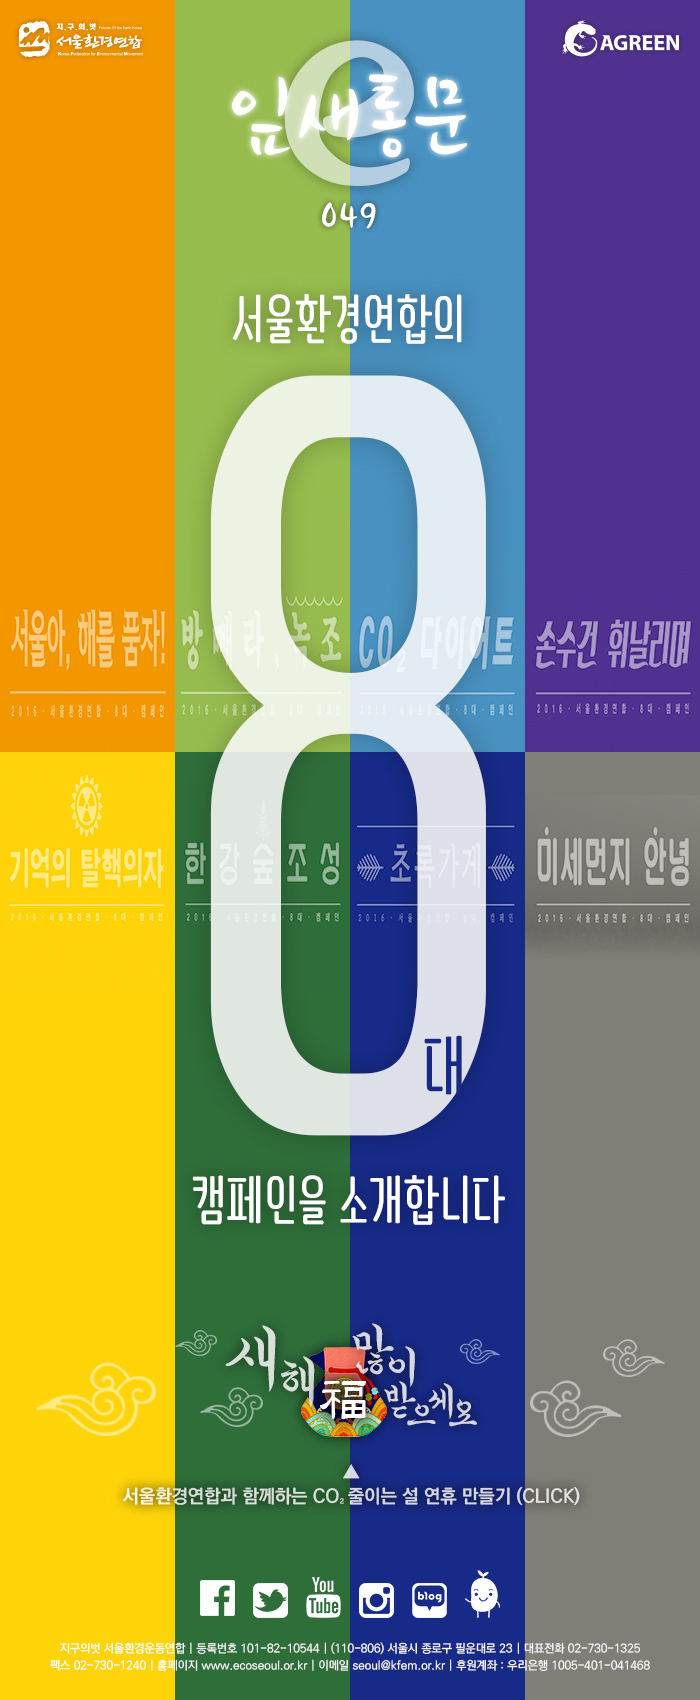 [e잎새통문 49호] 서울환경연합 뉴스레터 2016년도 8대 캠페인 발표